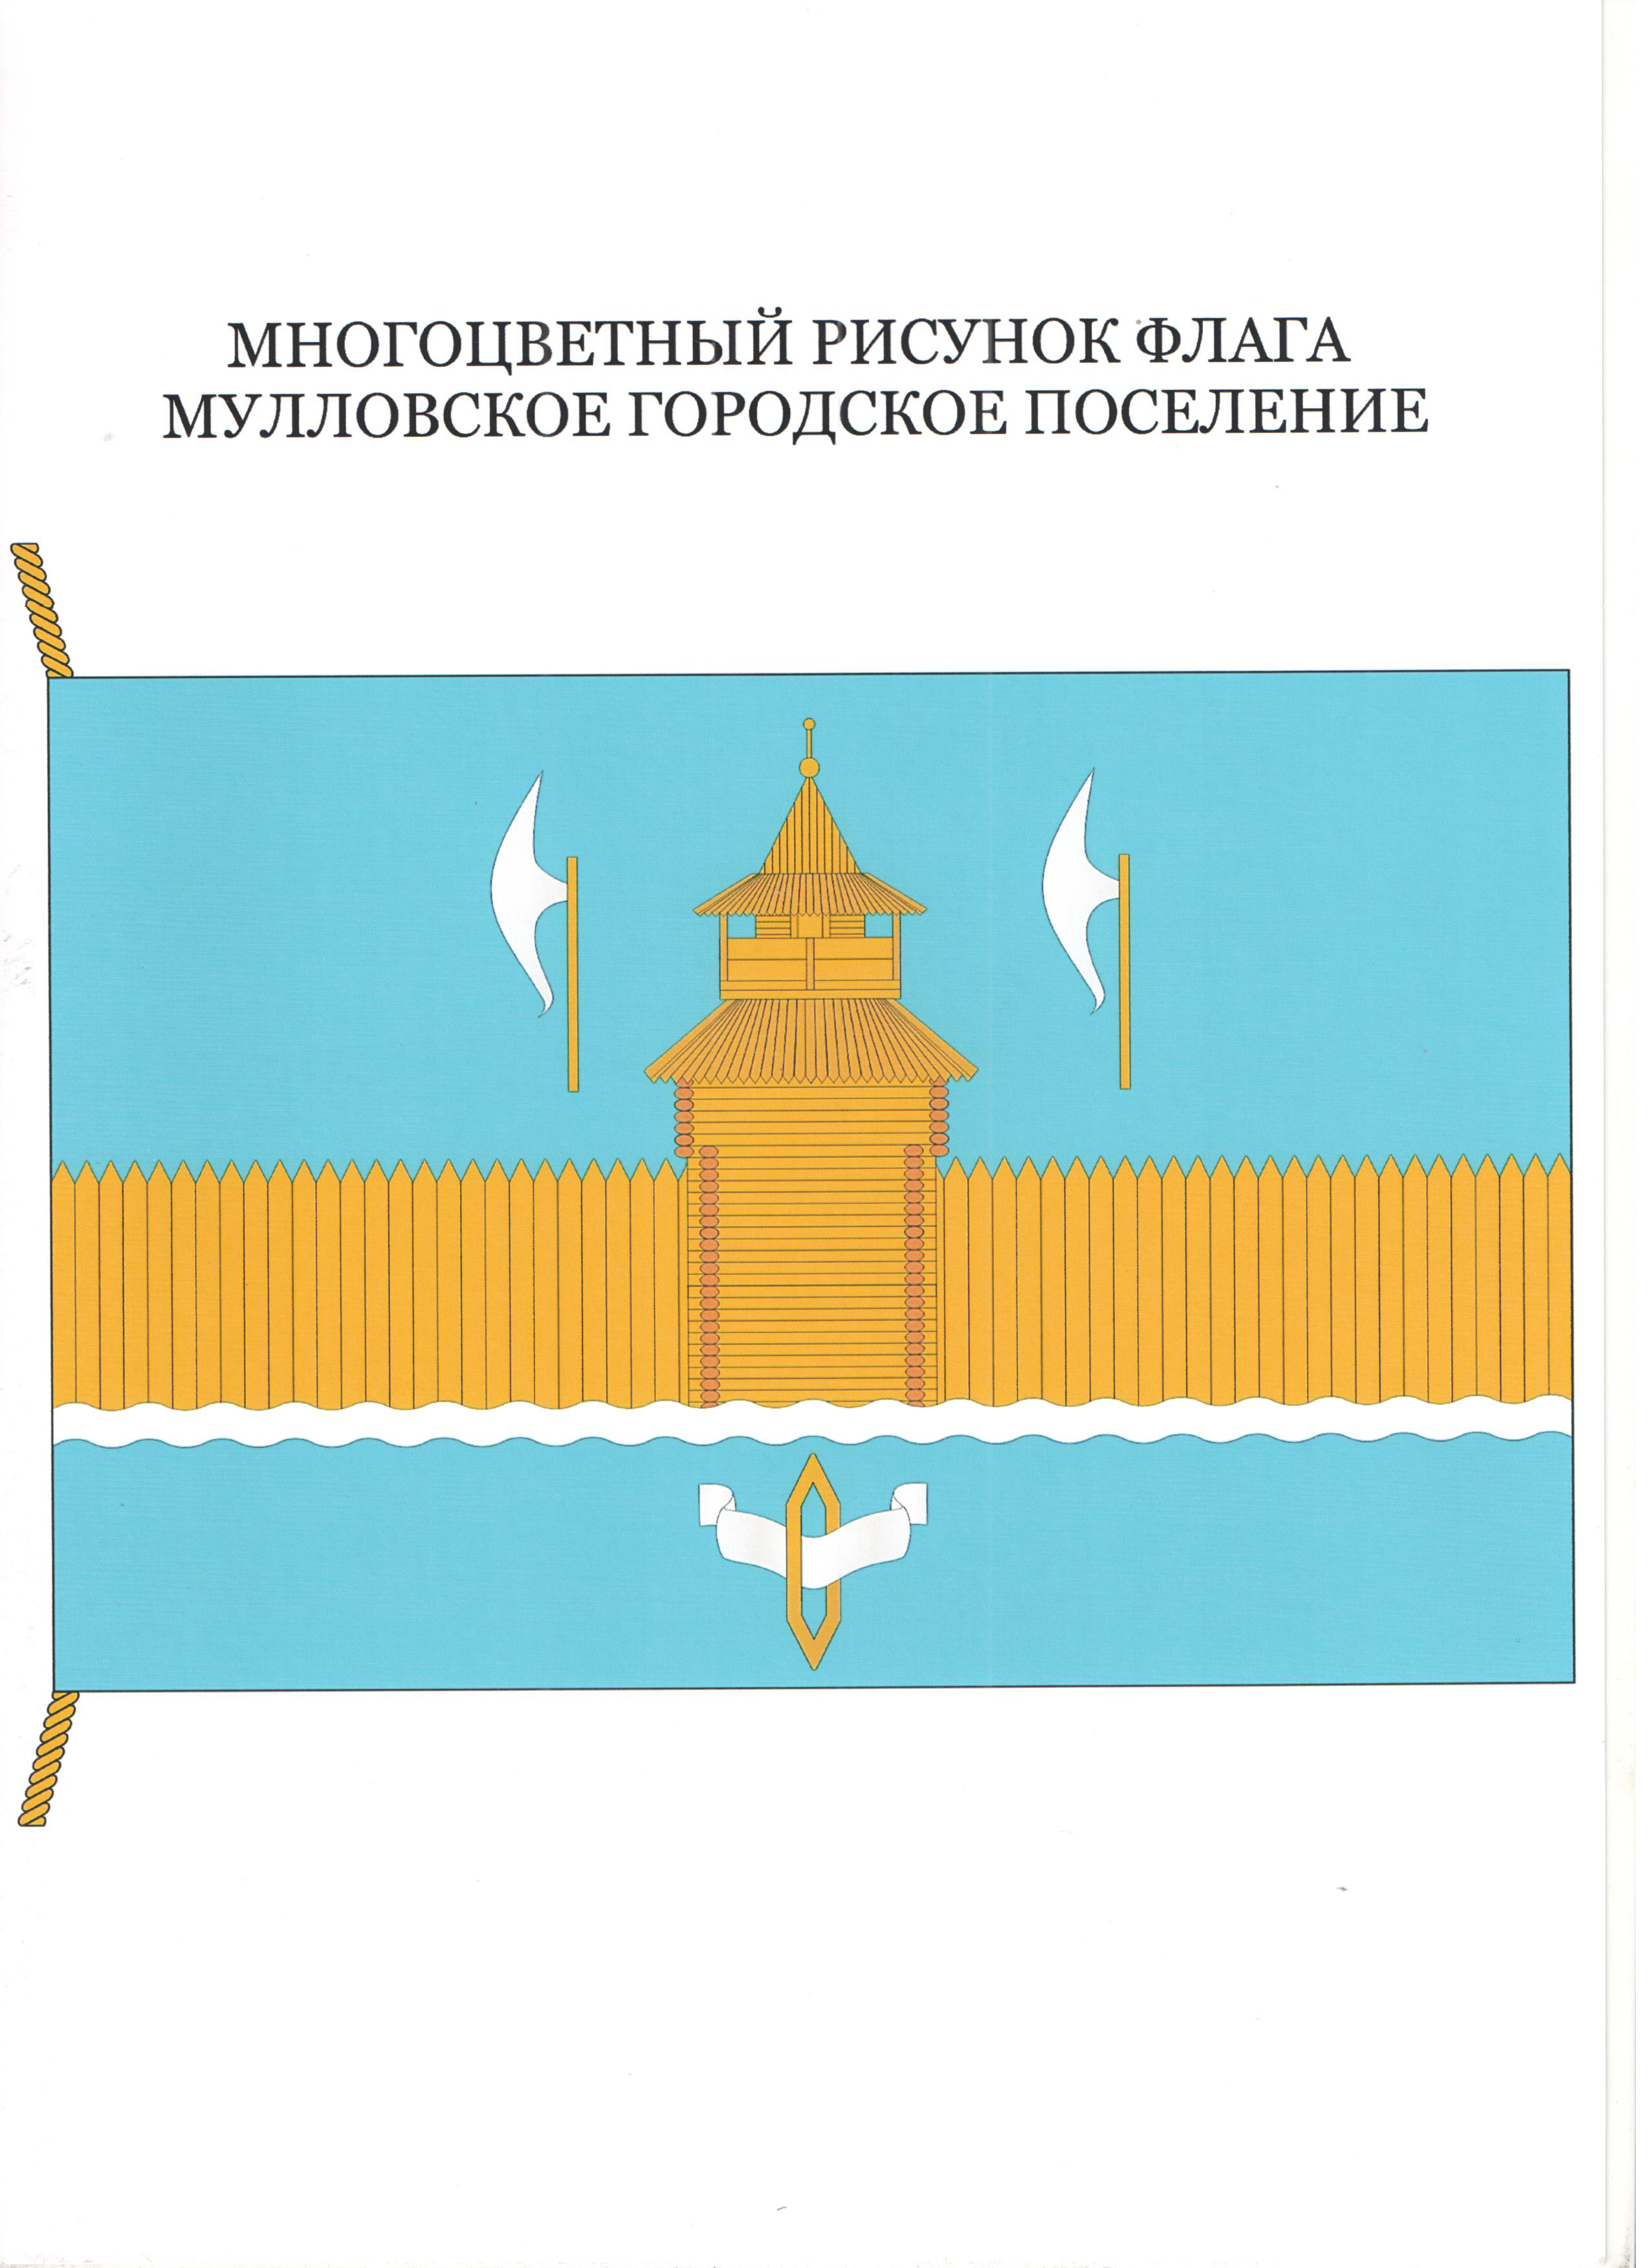 флаг  муниципального образования «Мулловское городское поселение» Мелекесского района Ульяновской области.